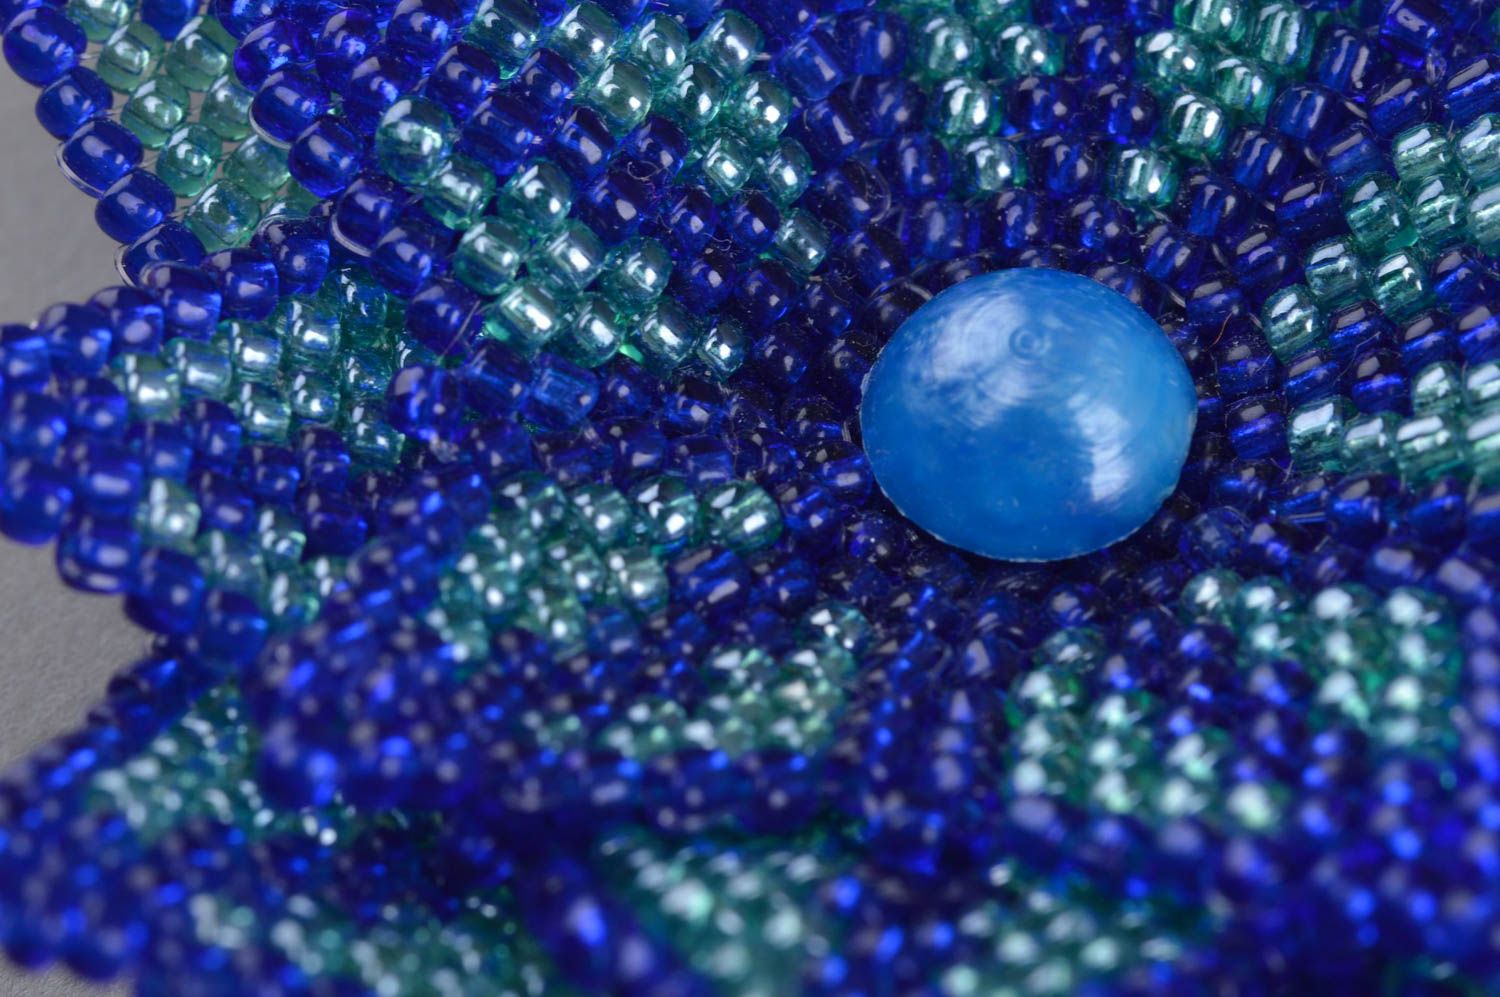 Blaue Blumen künstlerische Brosche aus Glasperlen einyigartig sch;n handmade foto 5